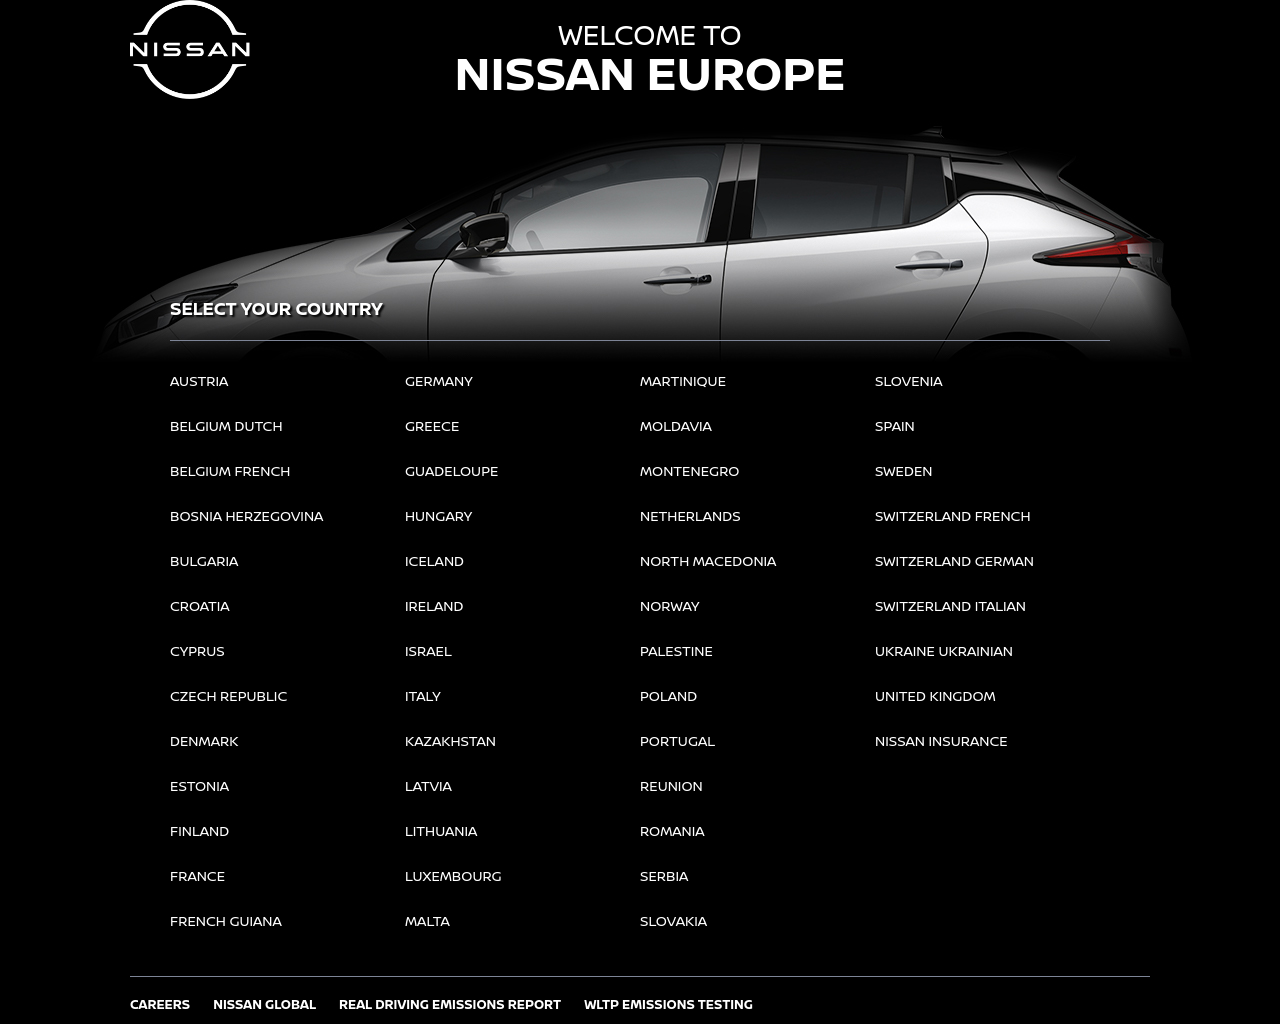 nissan-europe.com